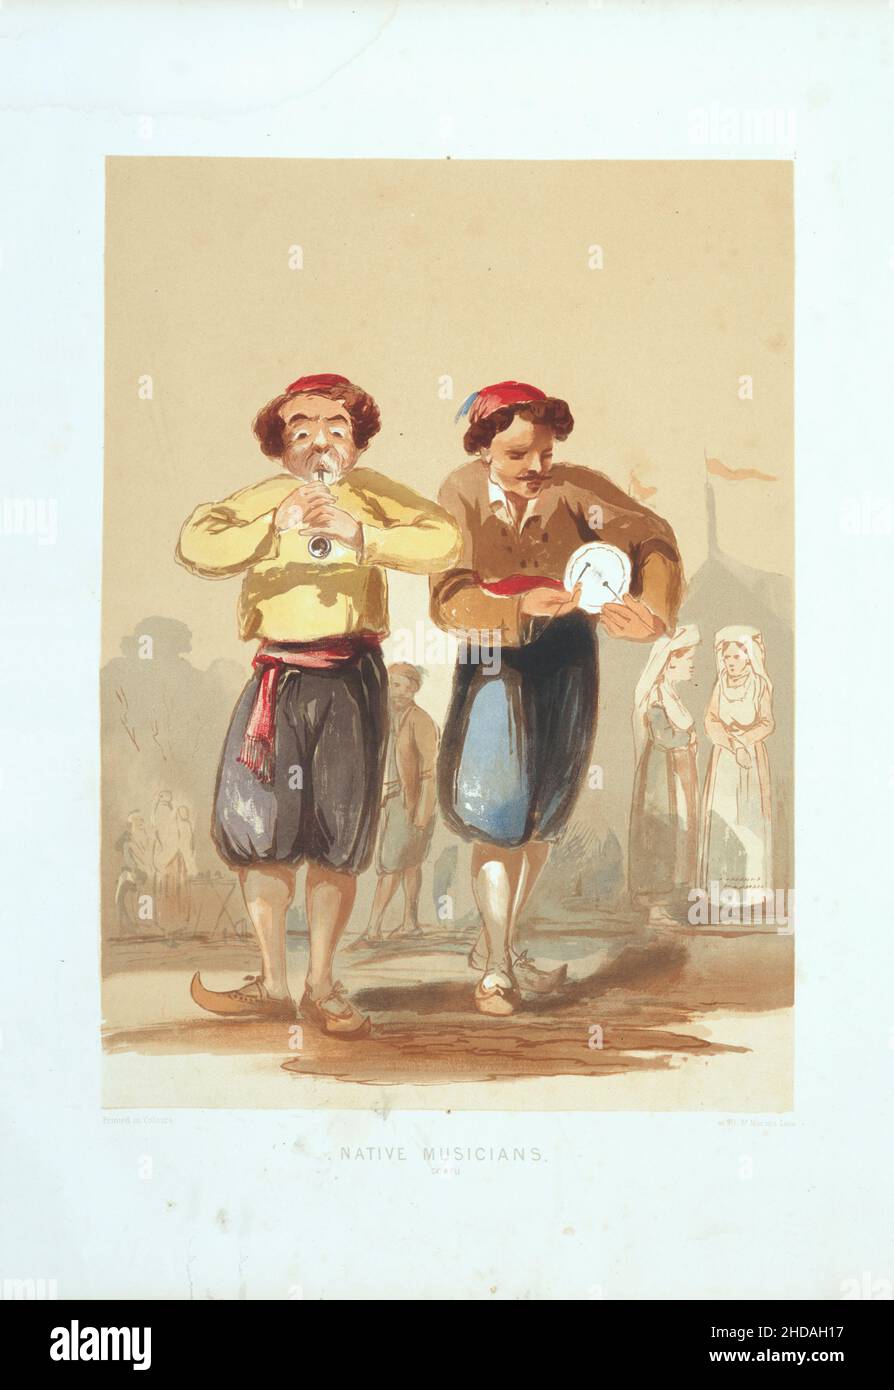 Vintage-Farblithographie des Osmanischen Reiches: Einheimische Musiker, Konstantinopel 1854, von Forbes Mac Bean (Künstler) und Justin Sutcliffe (Lithograph) Stockfoto